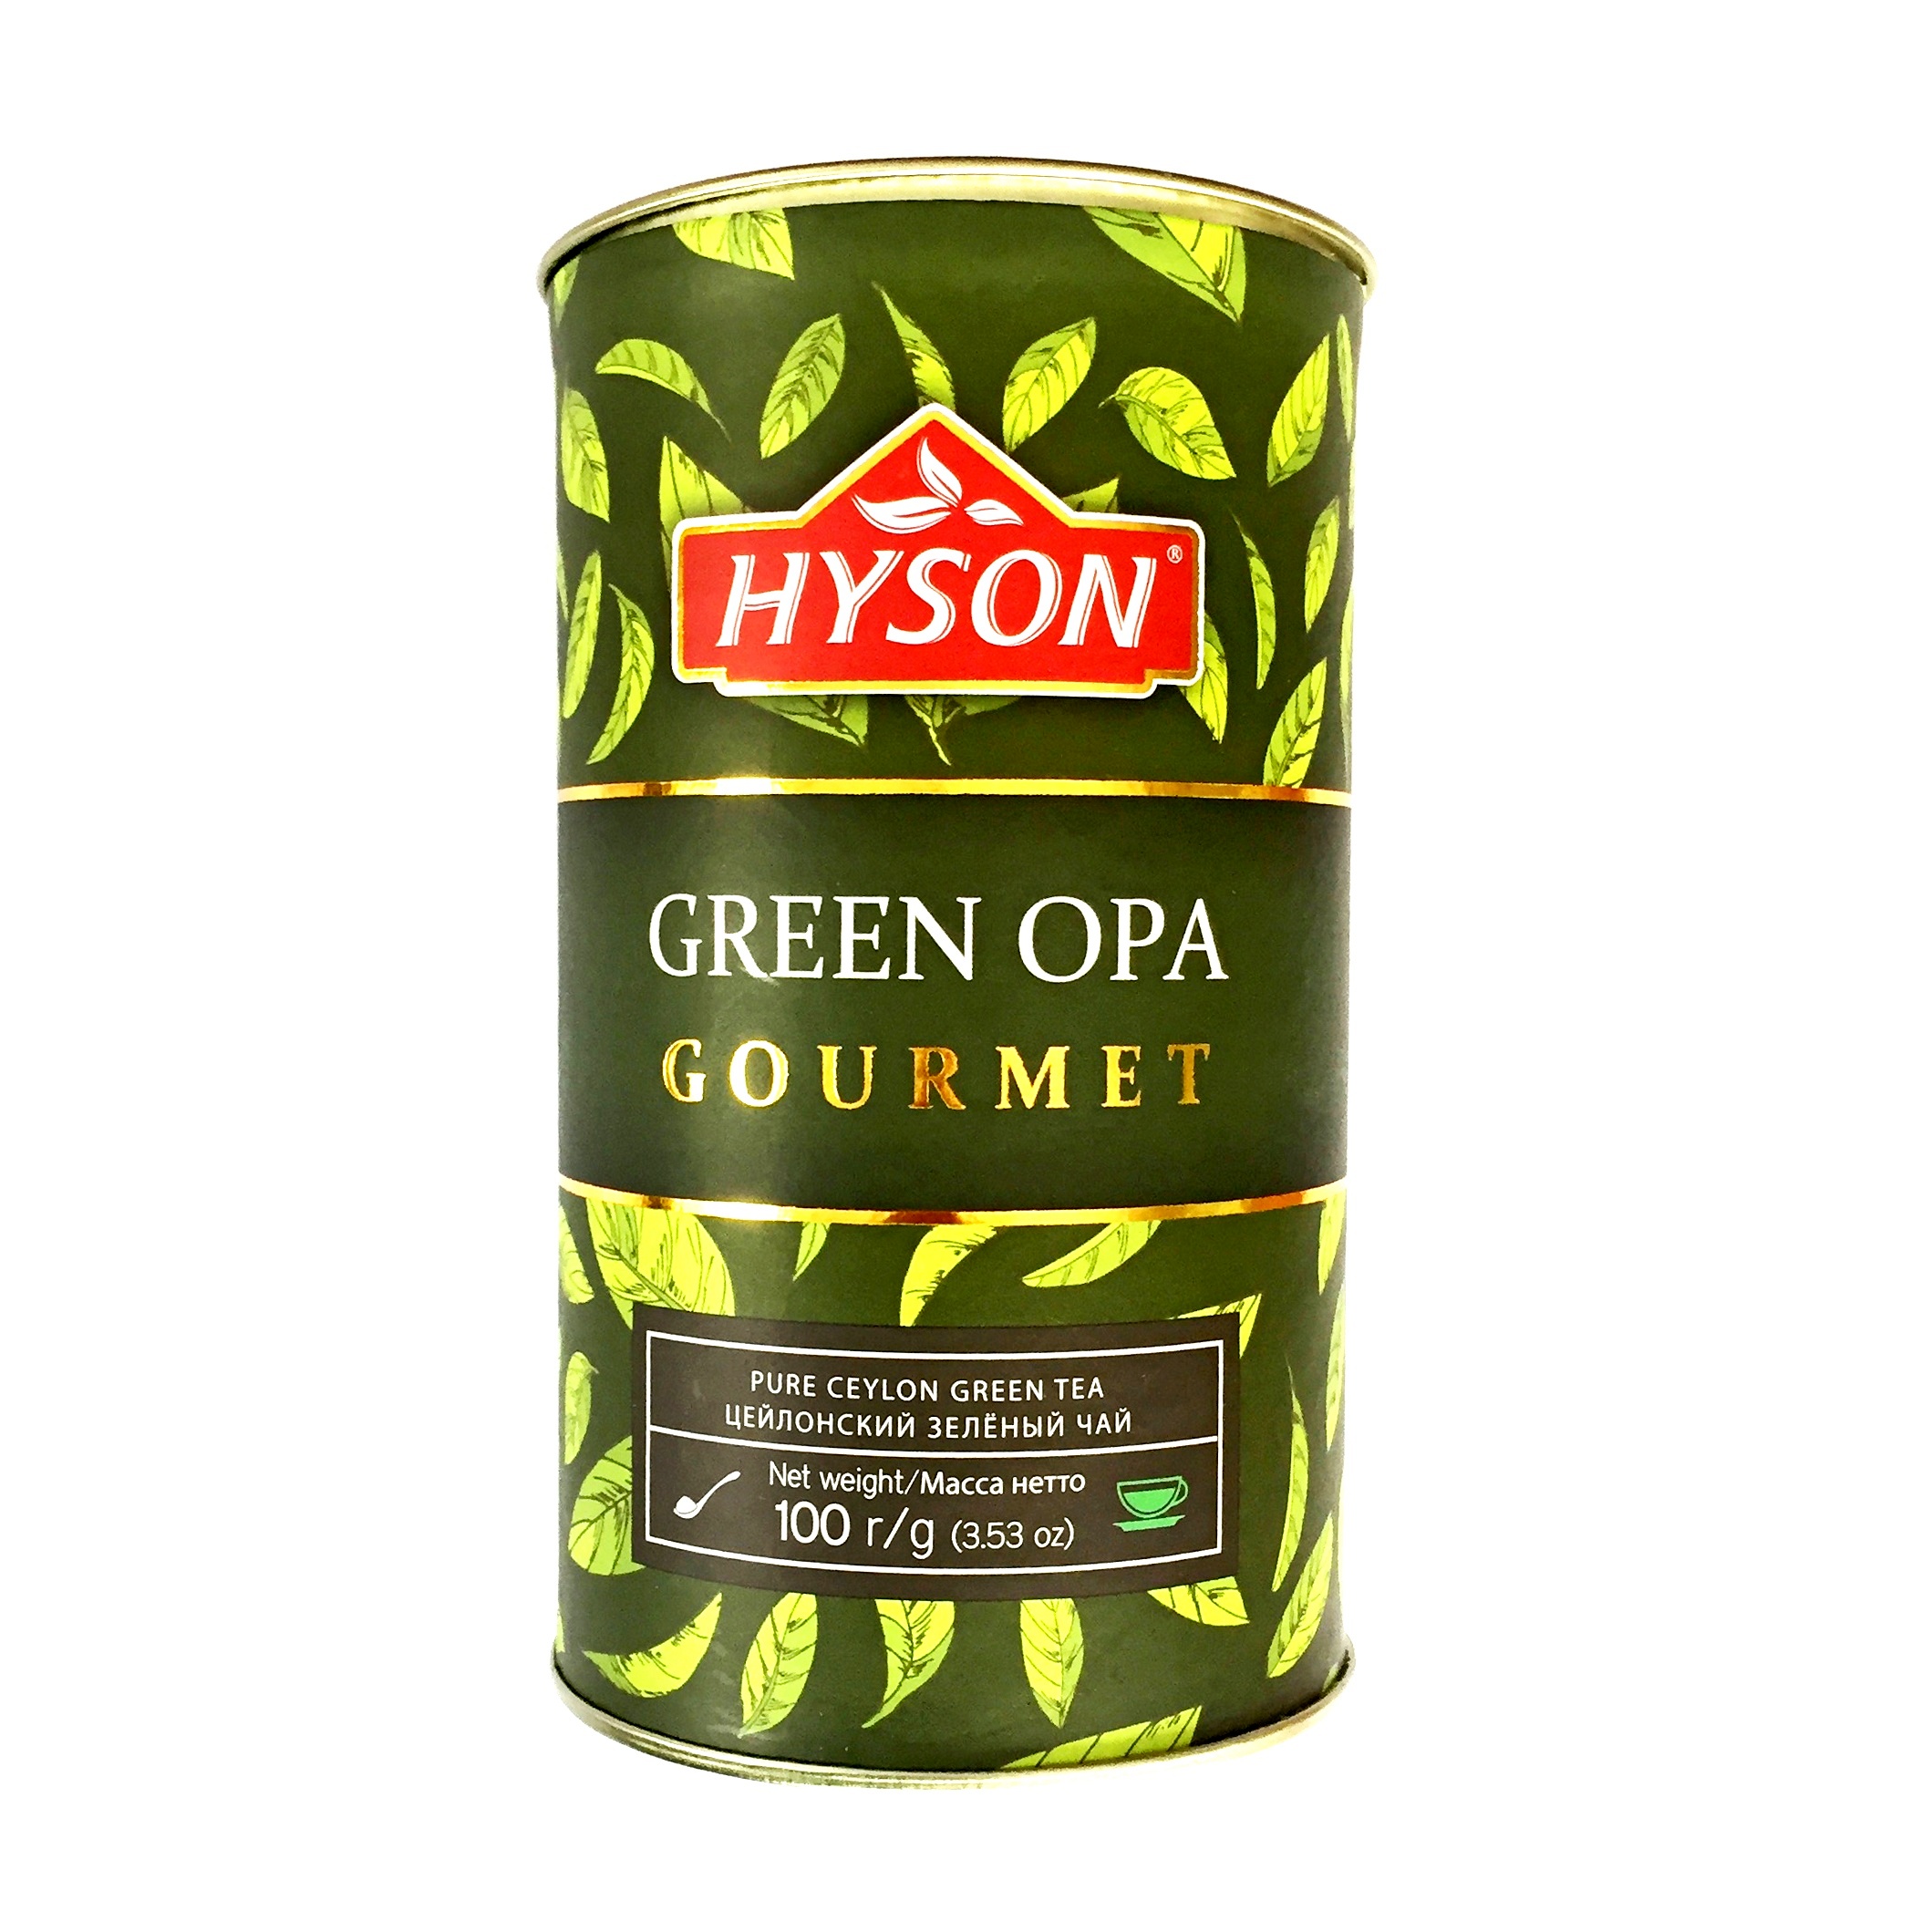 HYSON Green OPA Gourmet zelený sypaný čaj 100g 